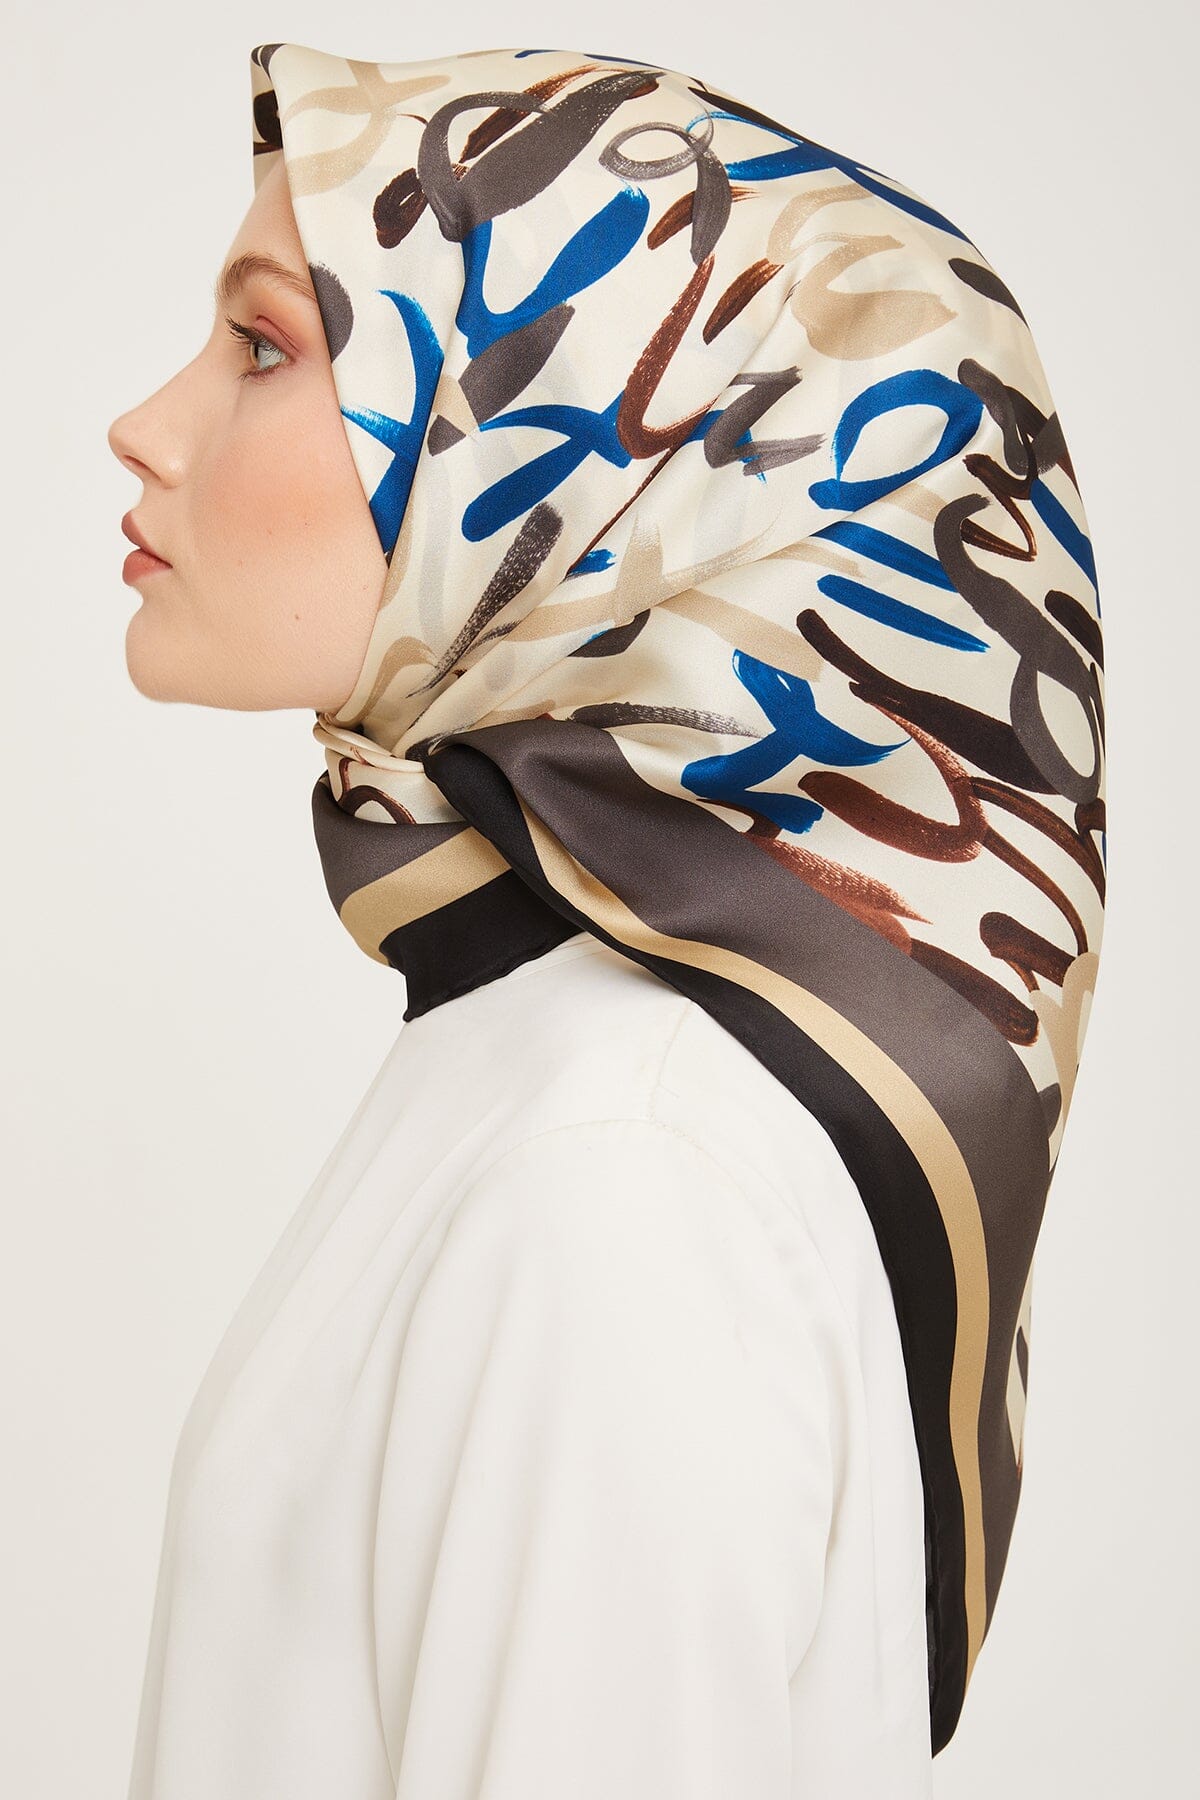 Armine Nudle Designer Silk Scarf #39 Silk Hijabs,Armine Armine 